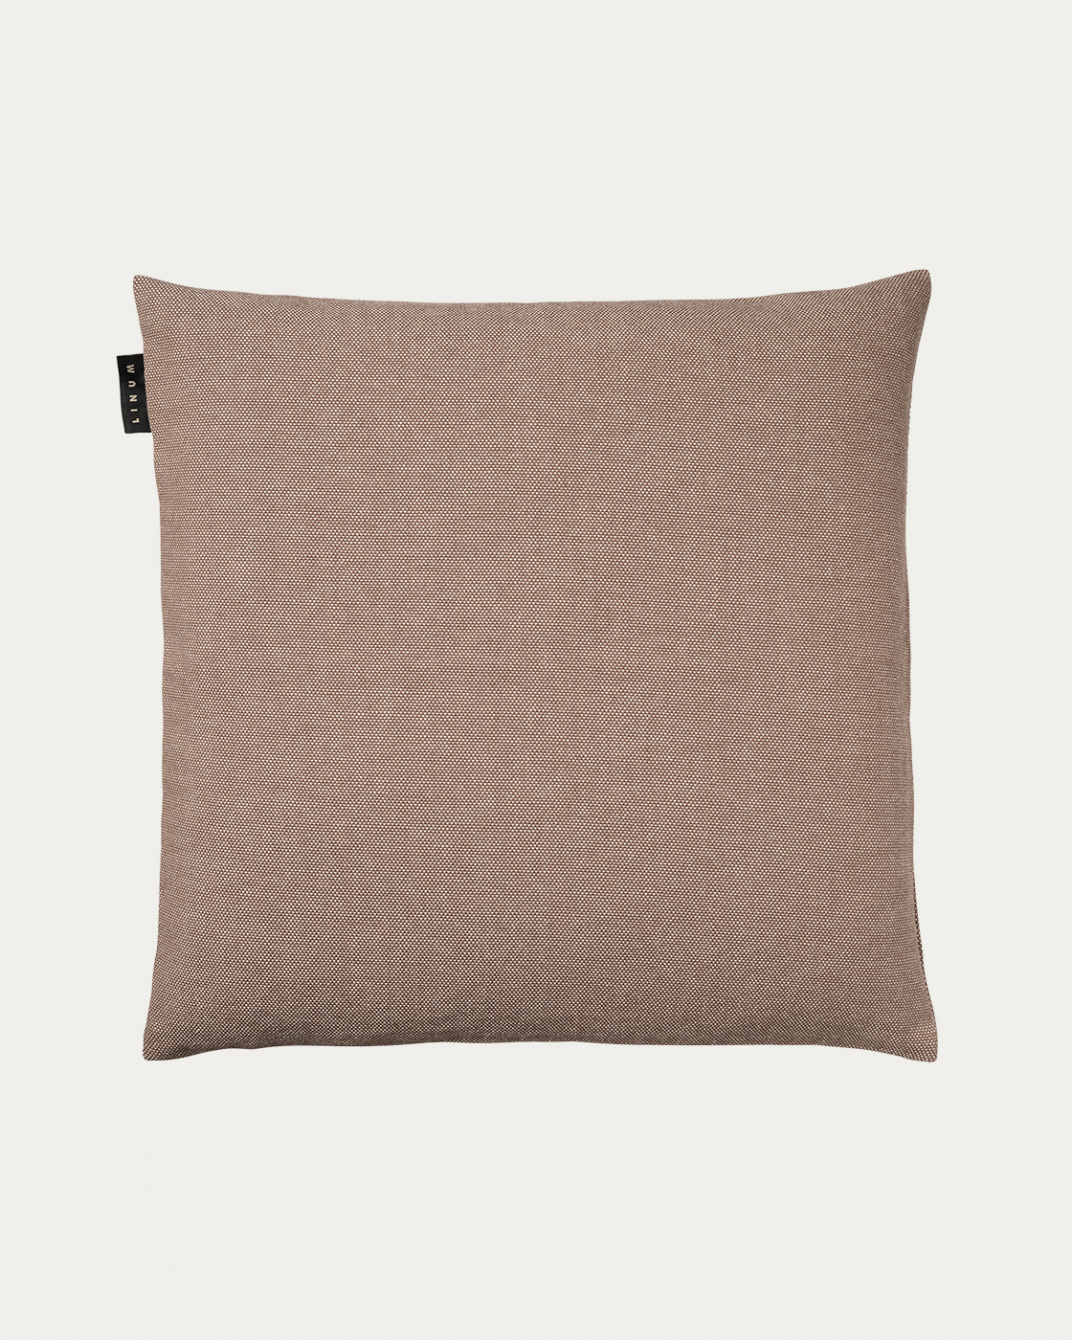 PEPPER Cushion cover 50x50 cm Dark mole brown